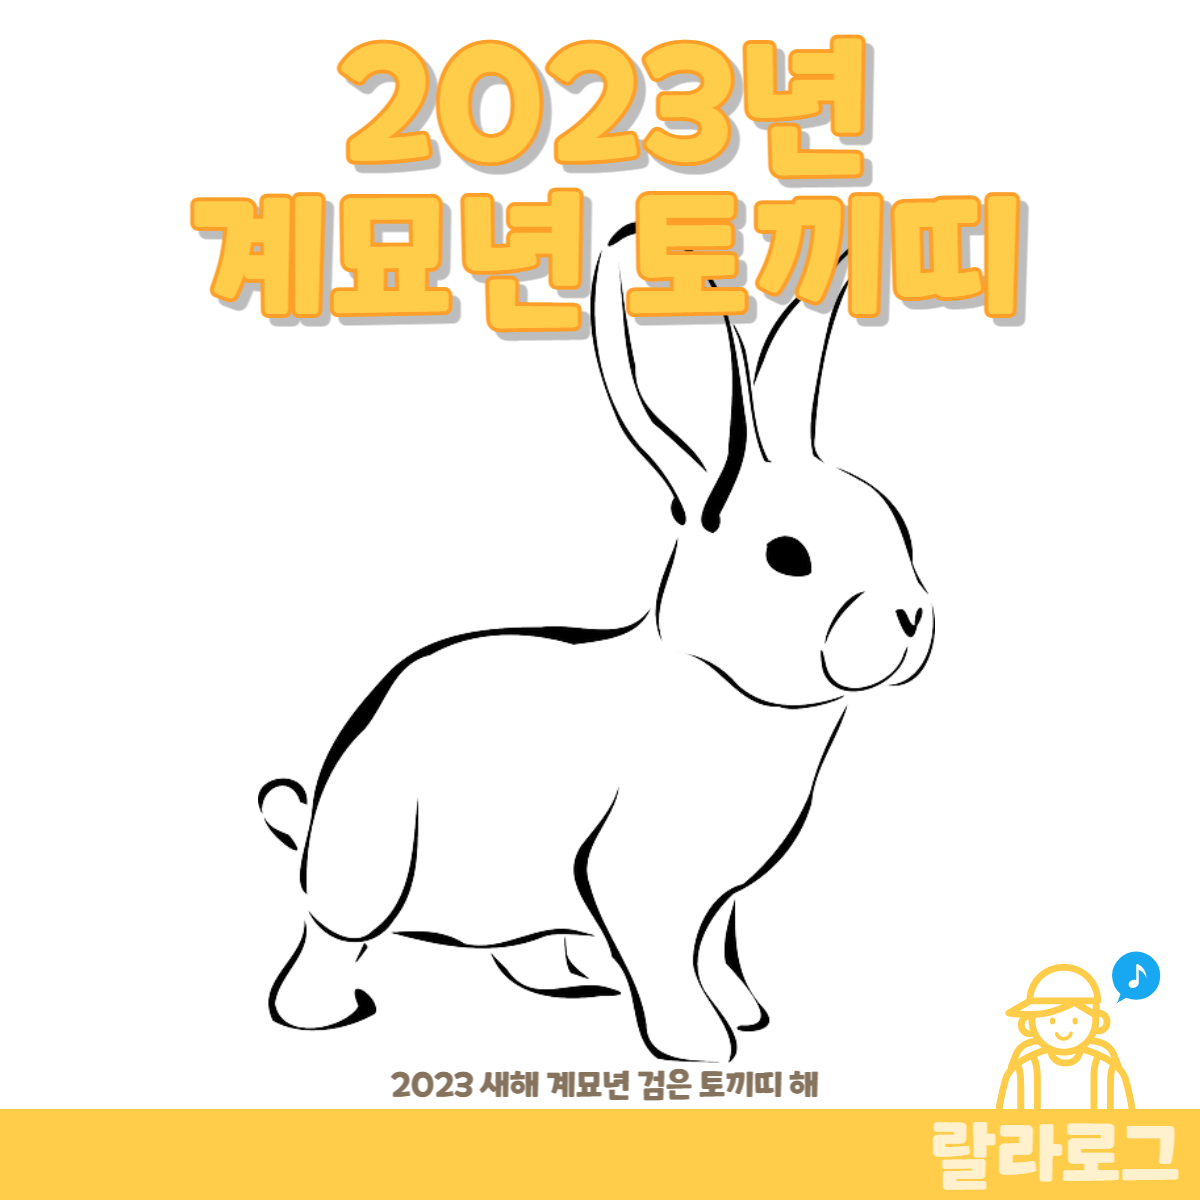 2023년-계묘년-토끼띠